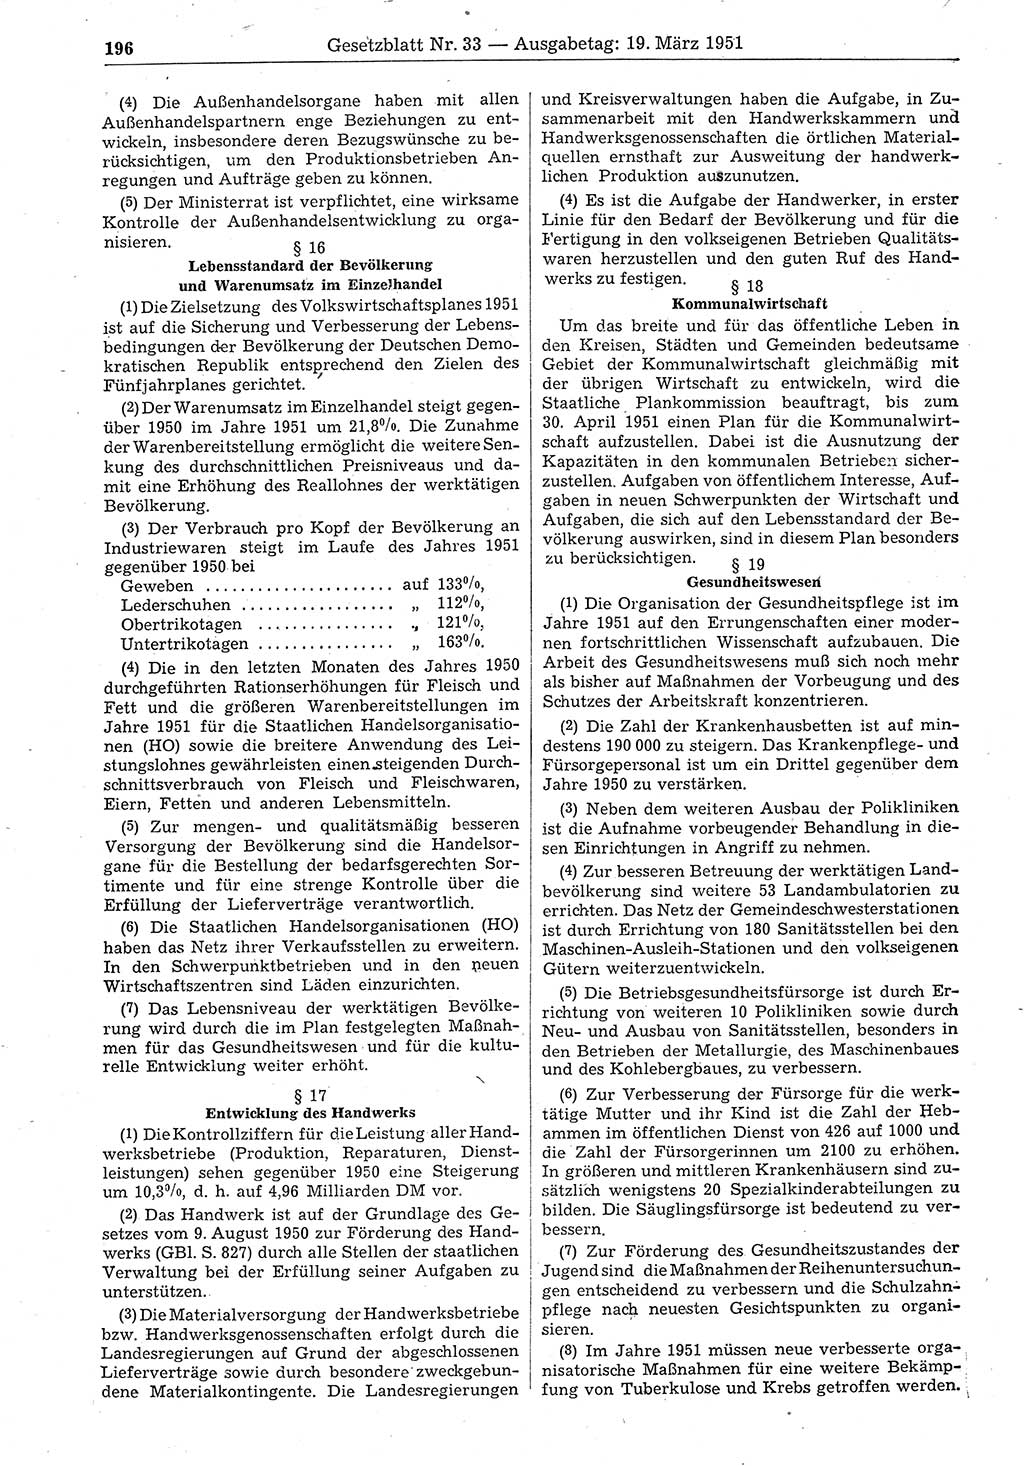 Gesetzblatt (GBl.) der Deutschen Demokratischen Republik (DDR) 1951, Seite 196 (GBl. DDR 1951, S. 196)